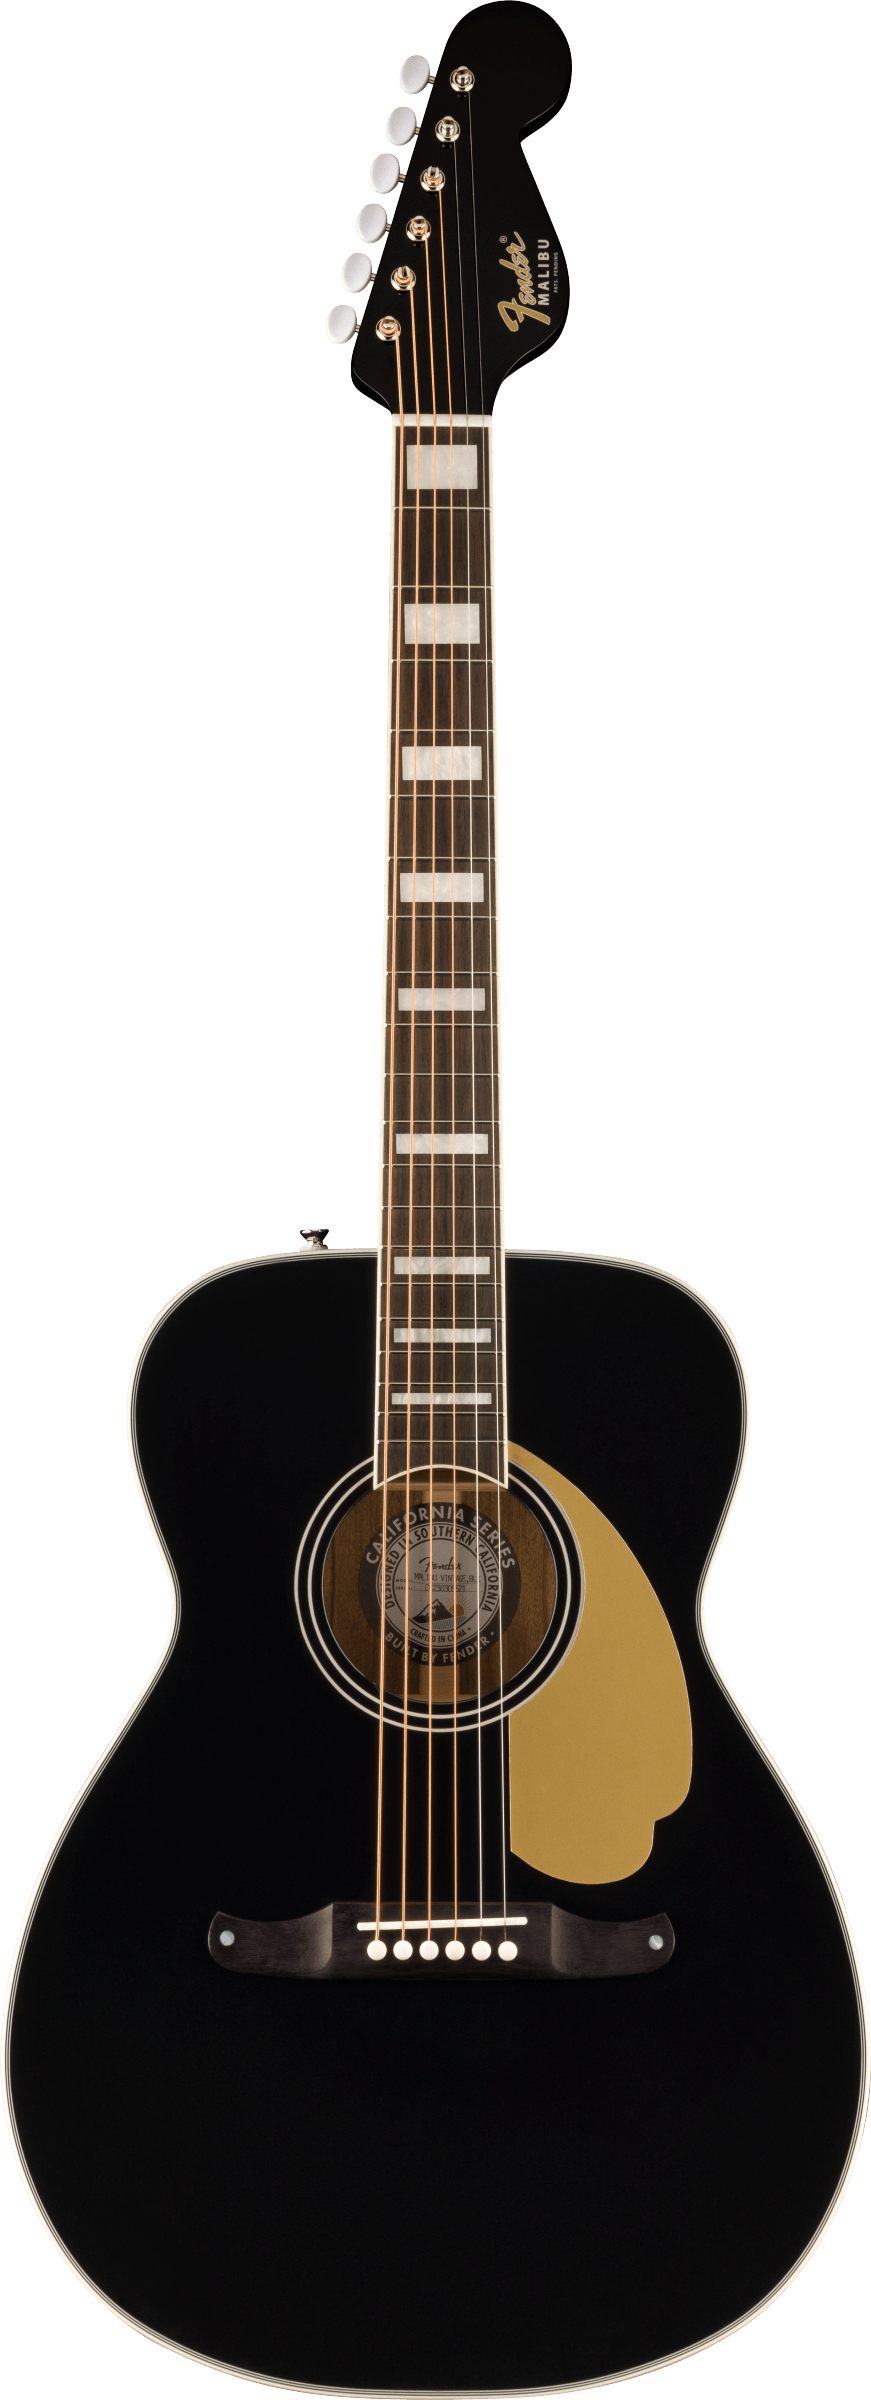 Full frontal of Fender Malibu Vintage Ovangkol Fingerboard Gold Pickguard Black.